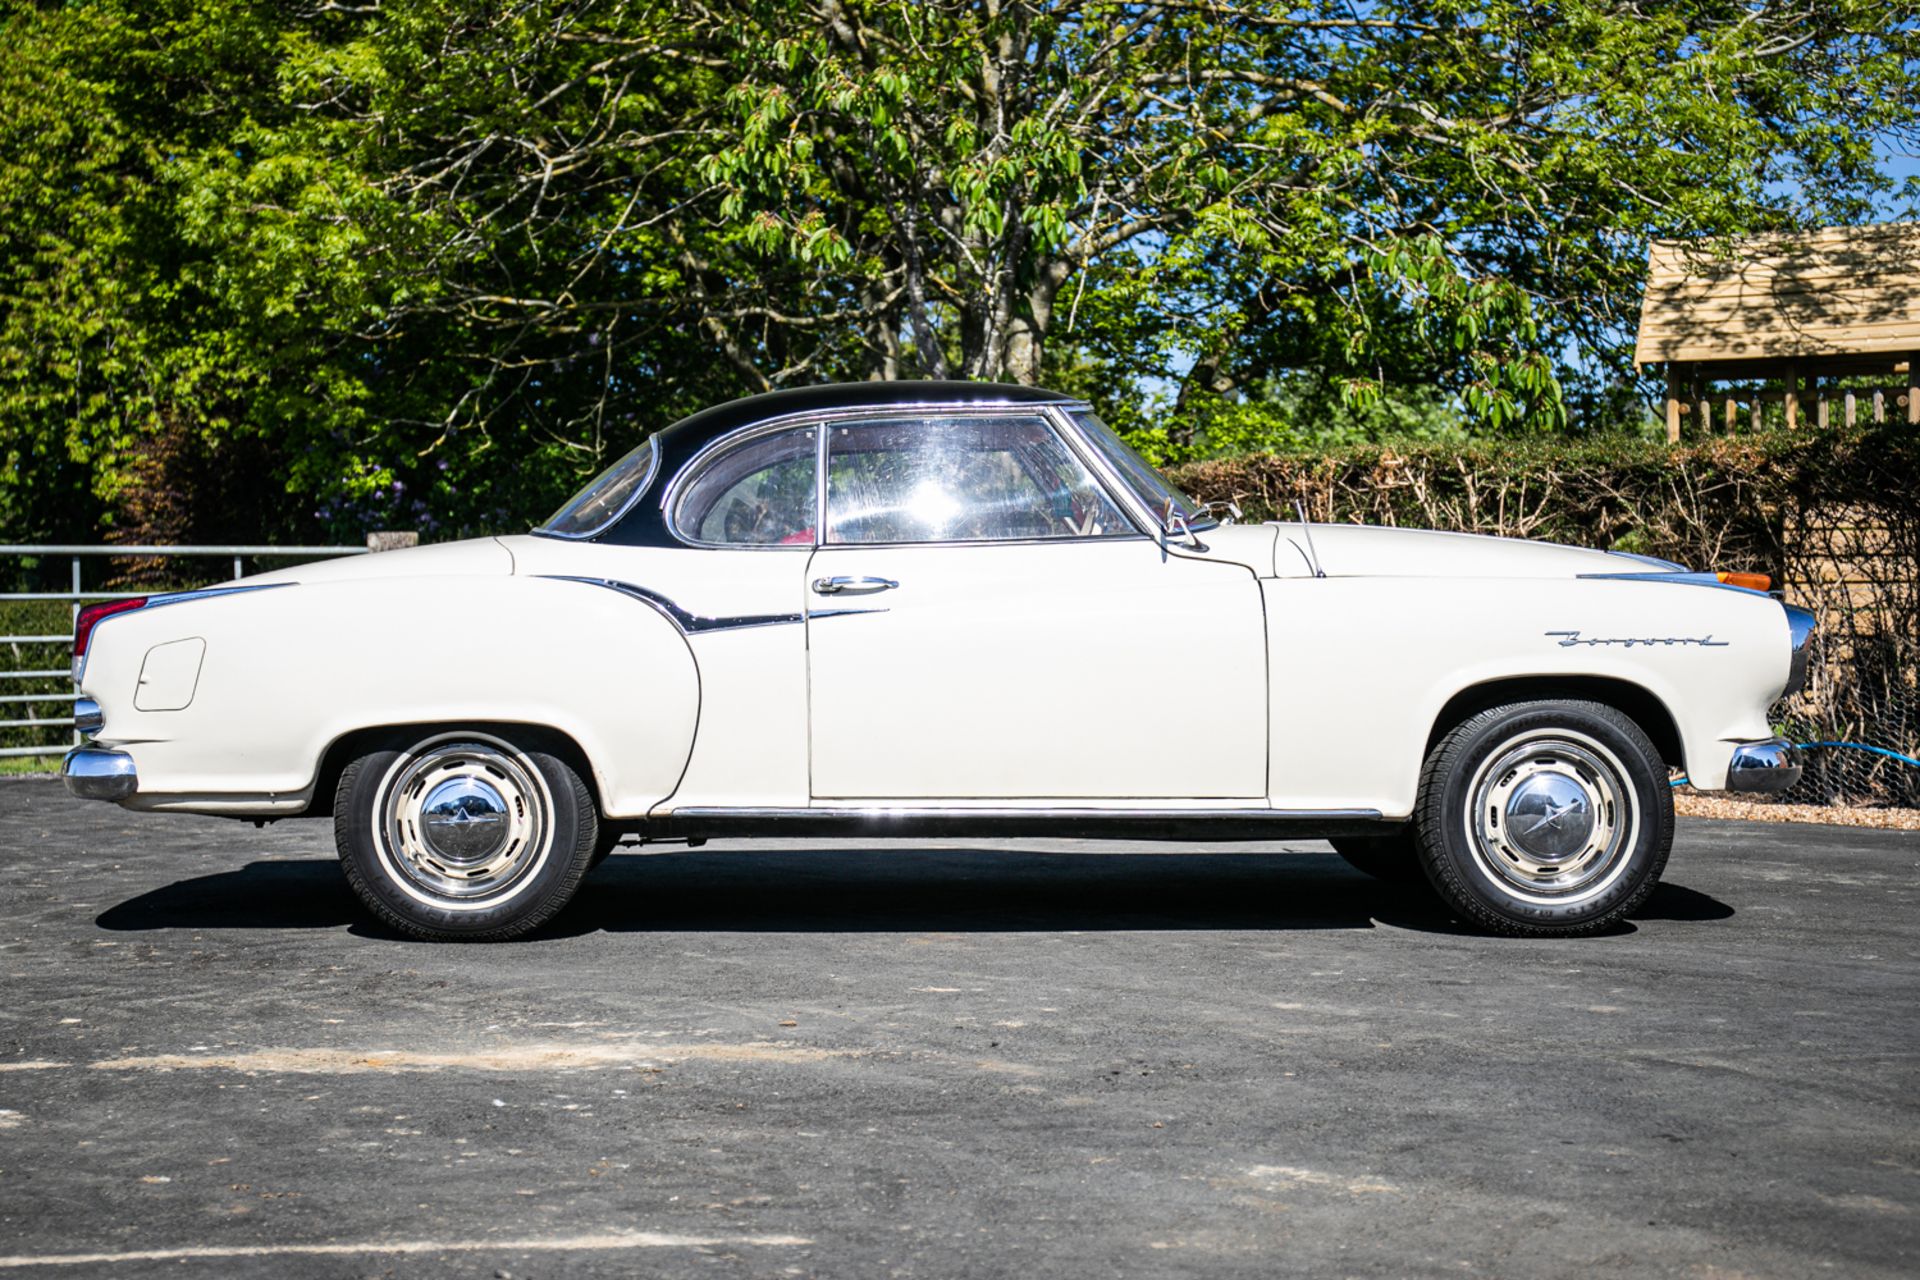 1959 Borgward Isabella Coupe - Image 2 of 20